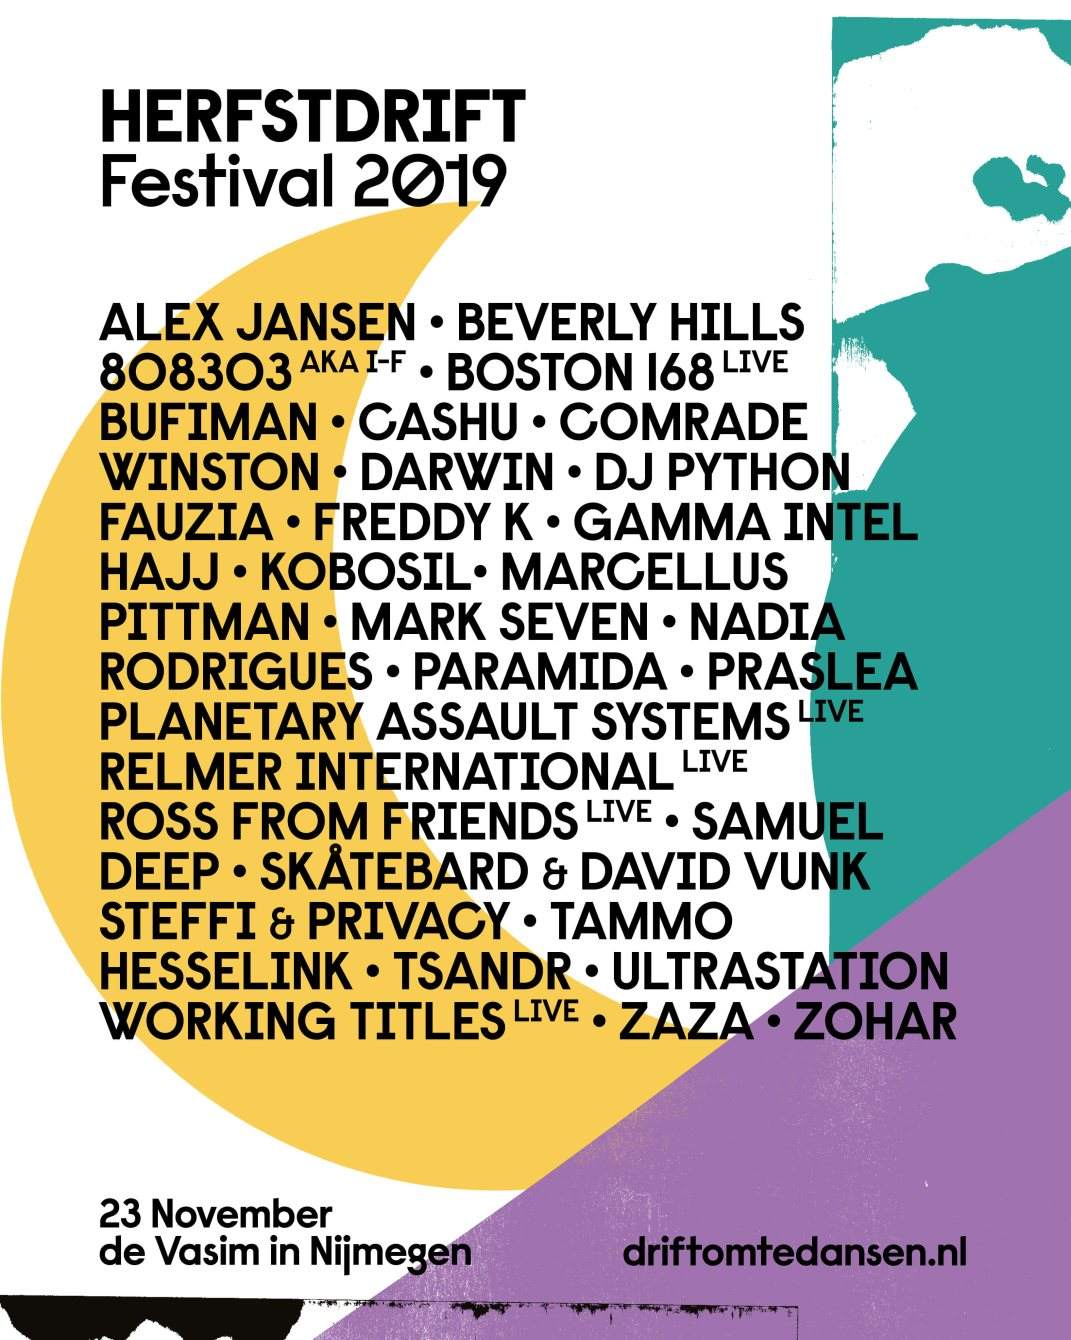 Herfstdrift Festival 2019 - フライヤー表